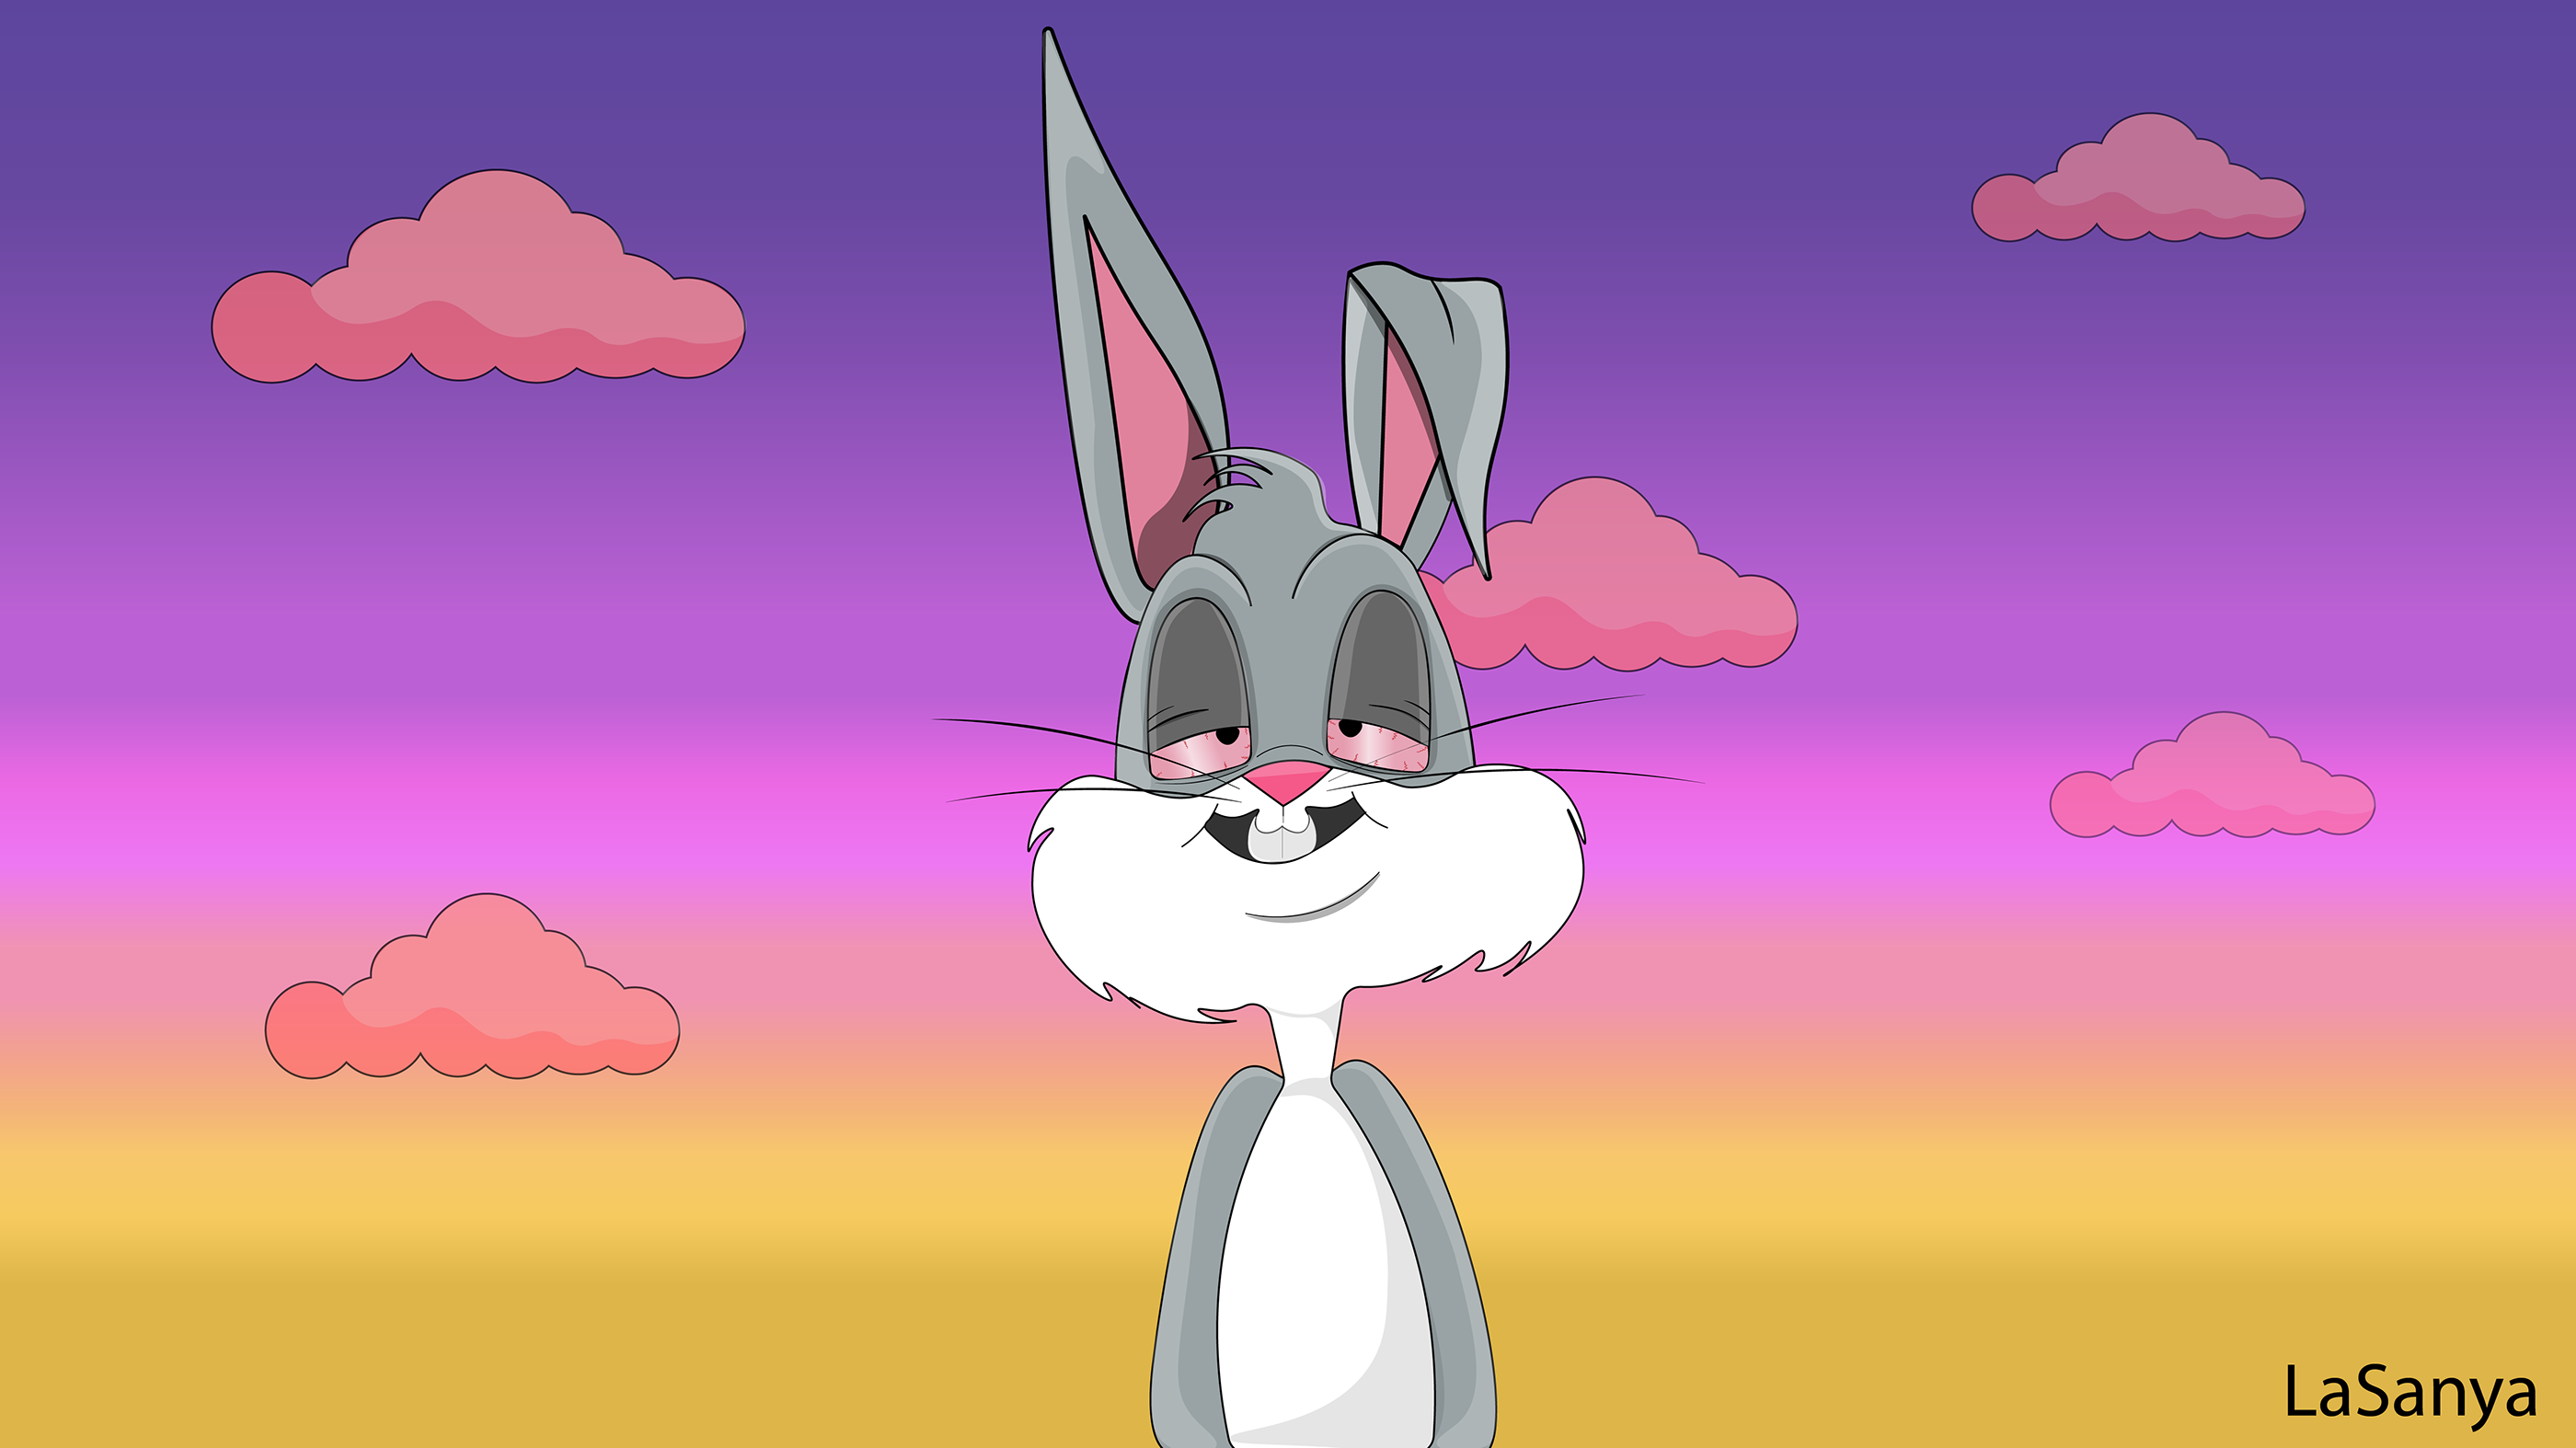 Bugs bunny stoned 🍓 Wasup Doc? - image #3148111 on Favim.com